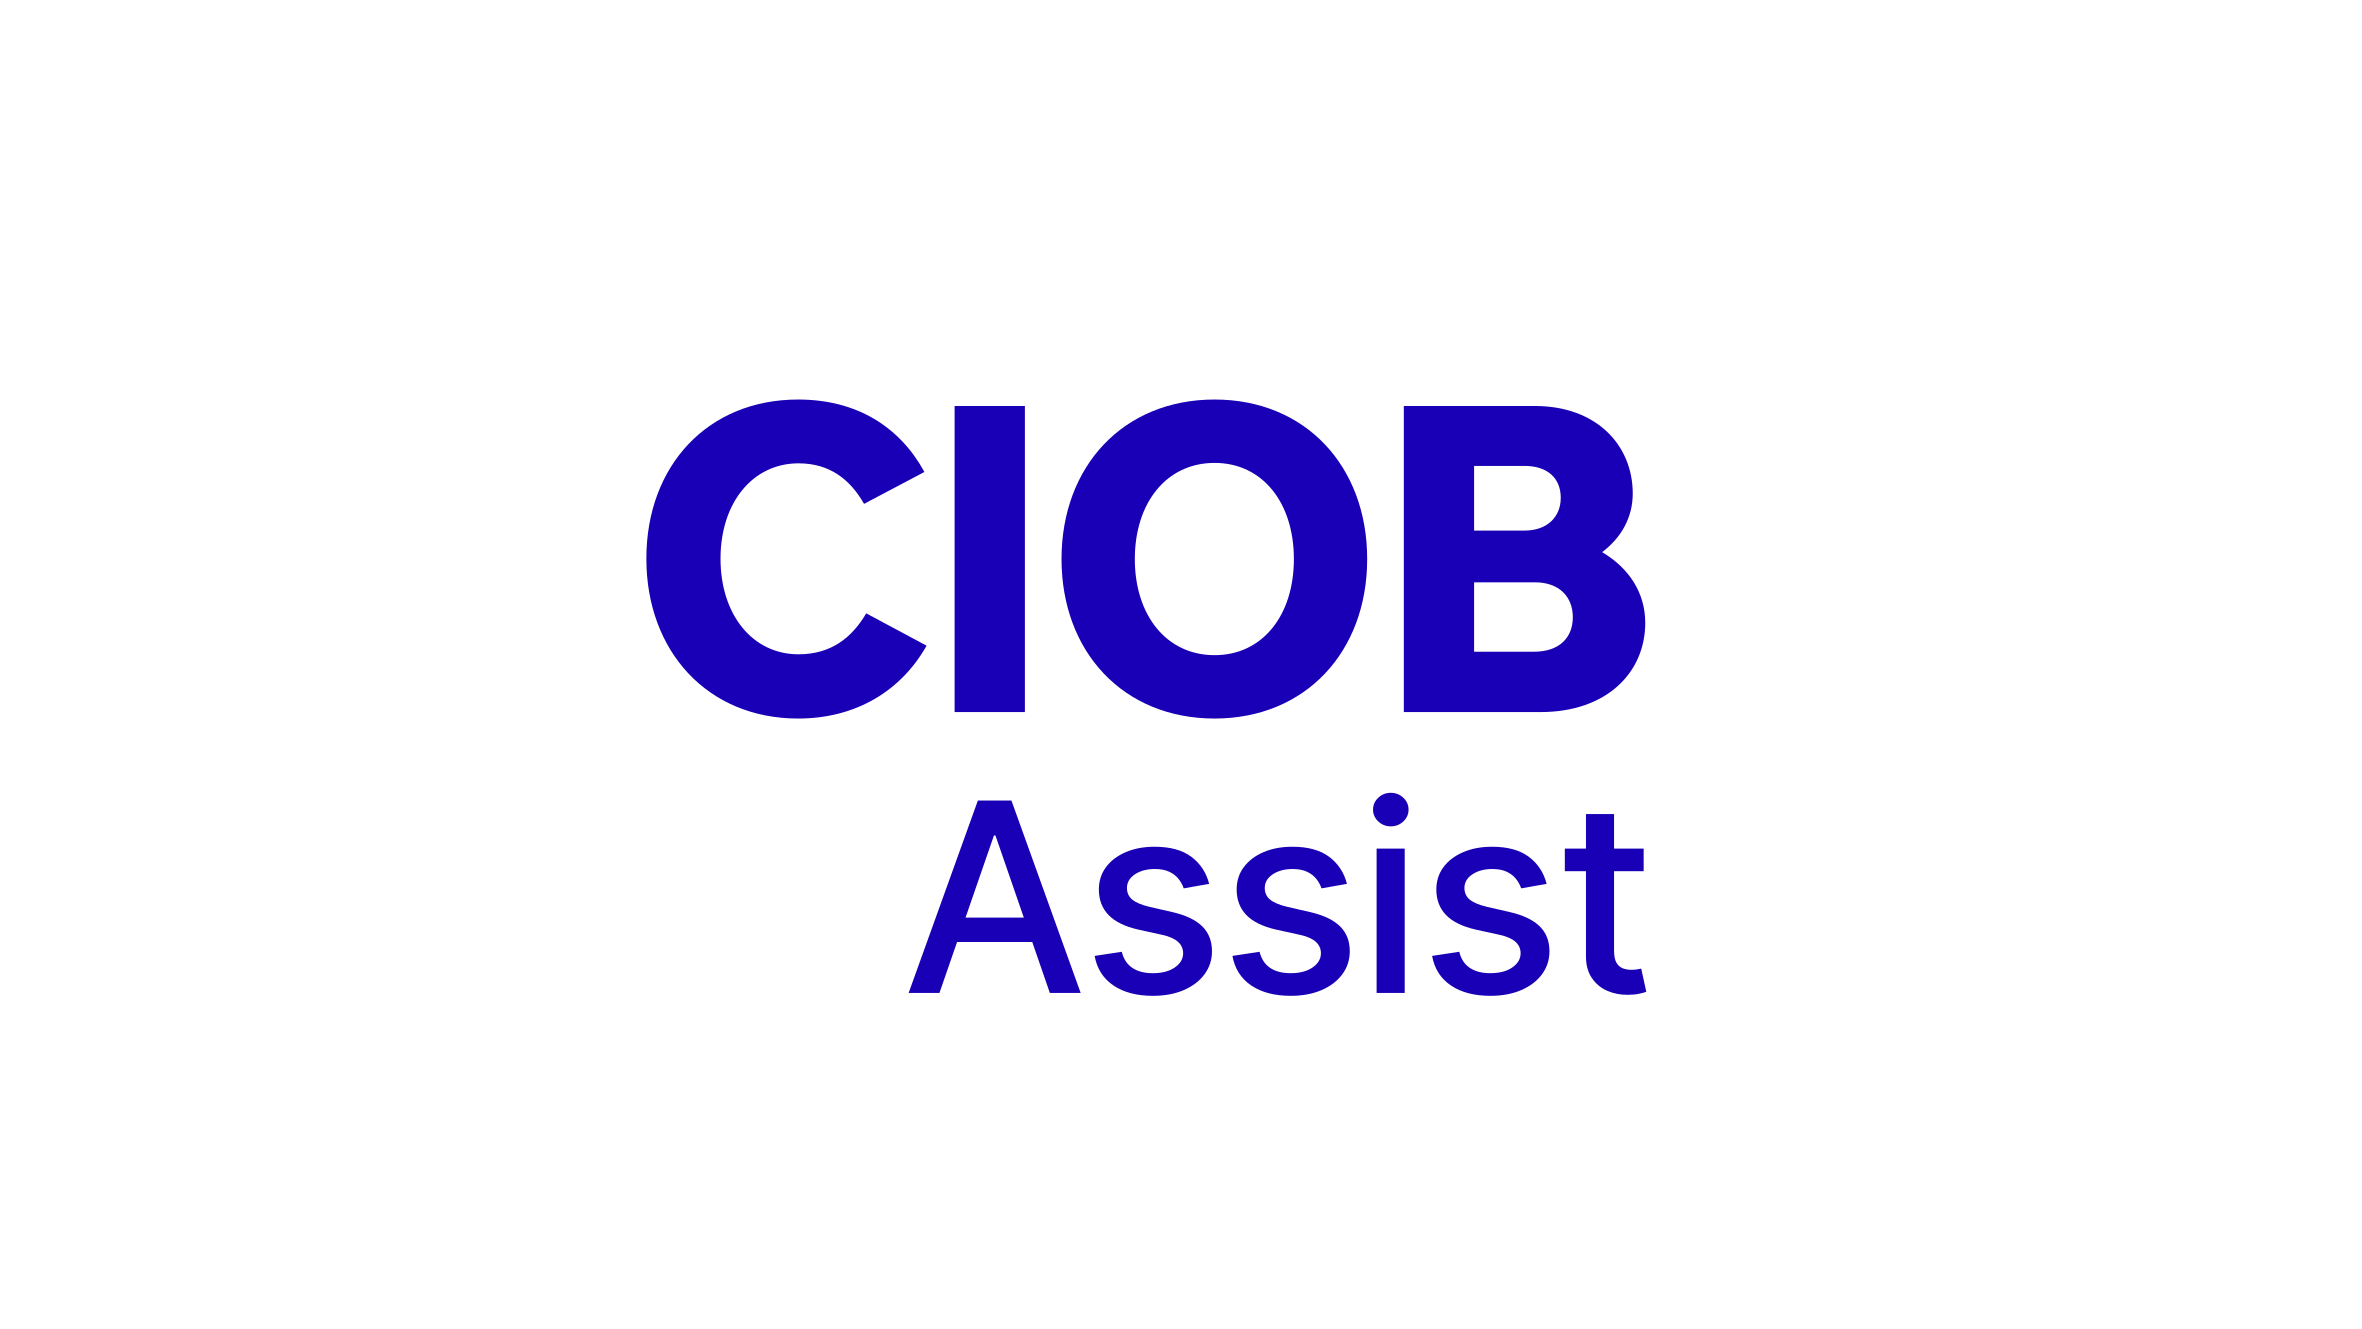 CIOB Assist